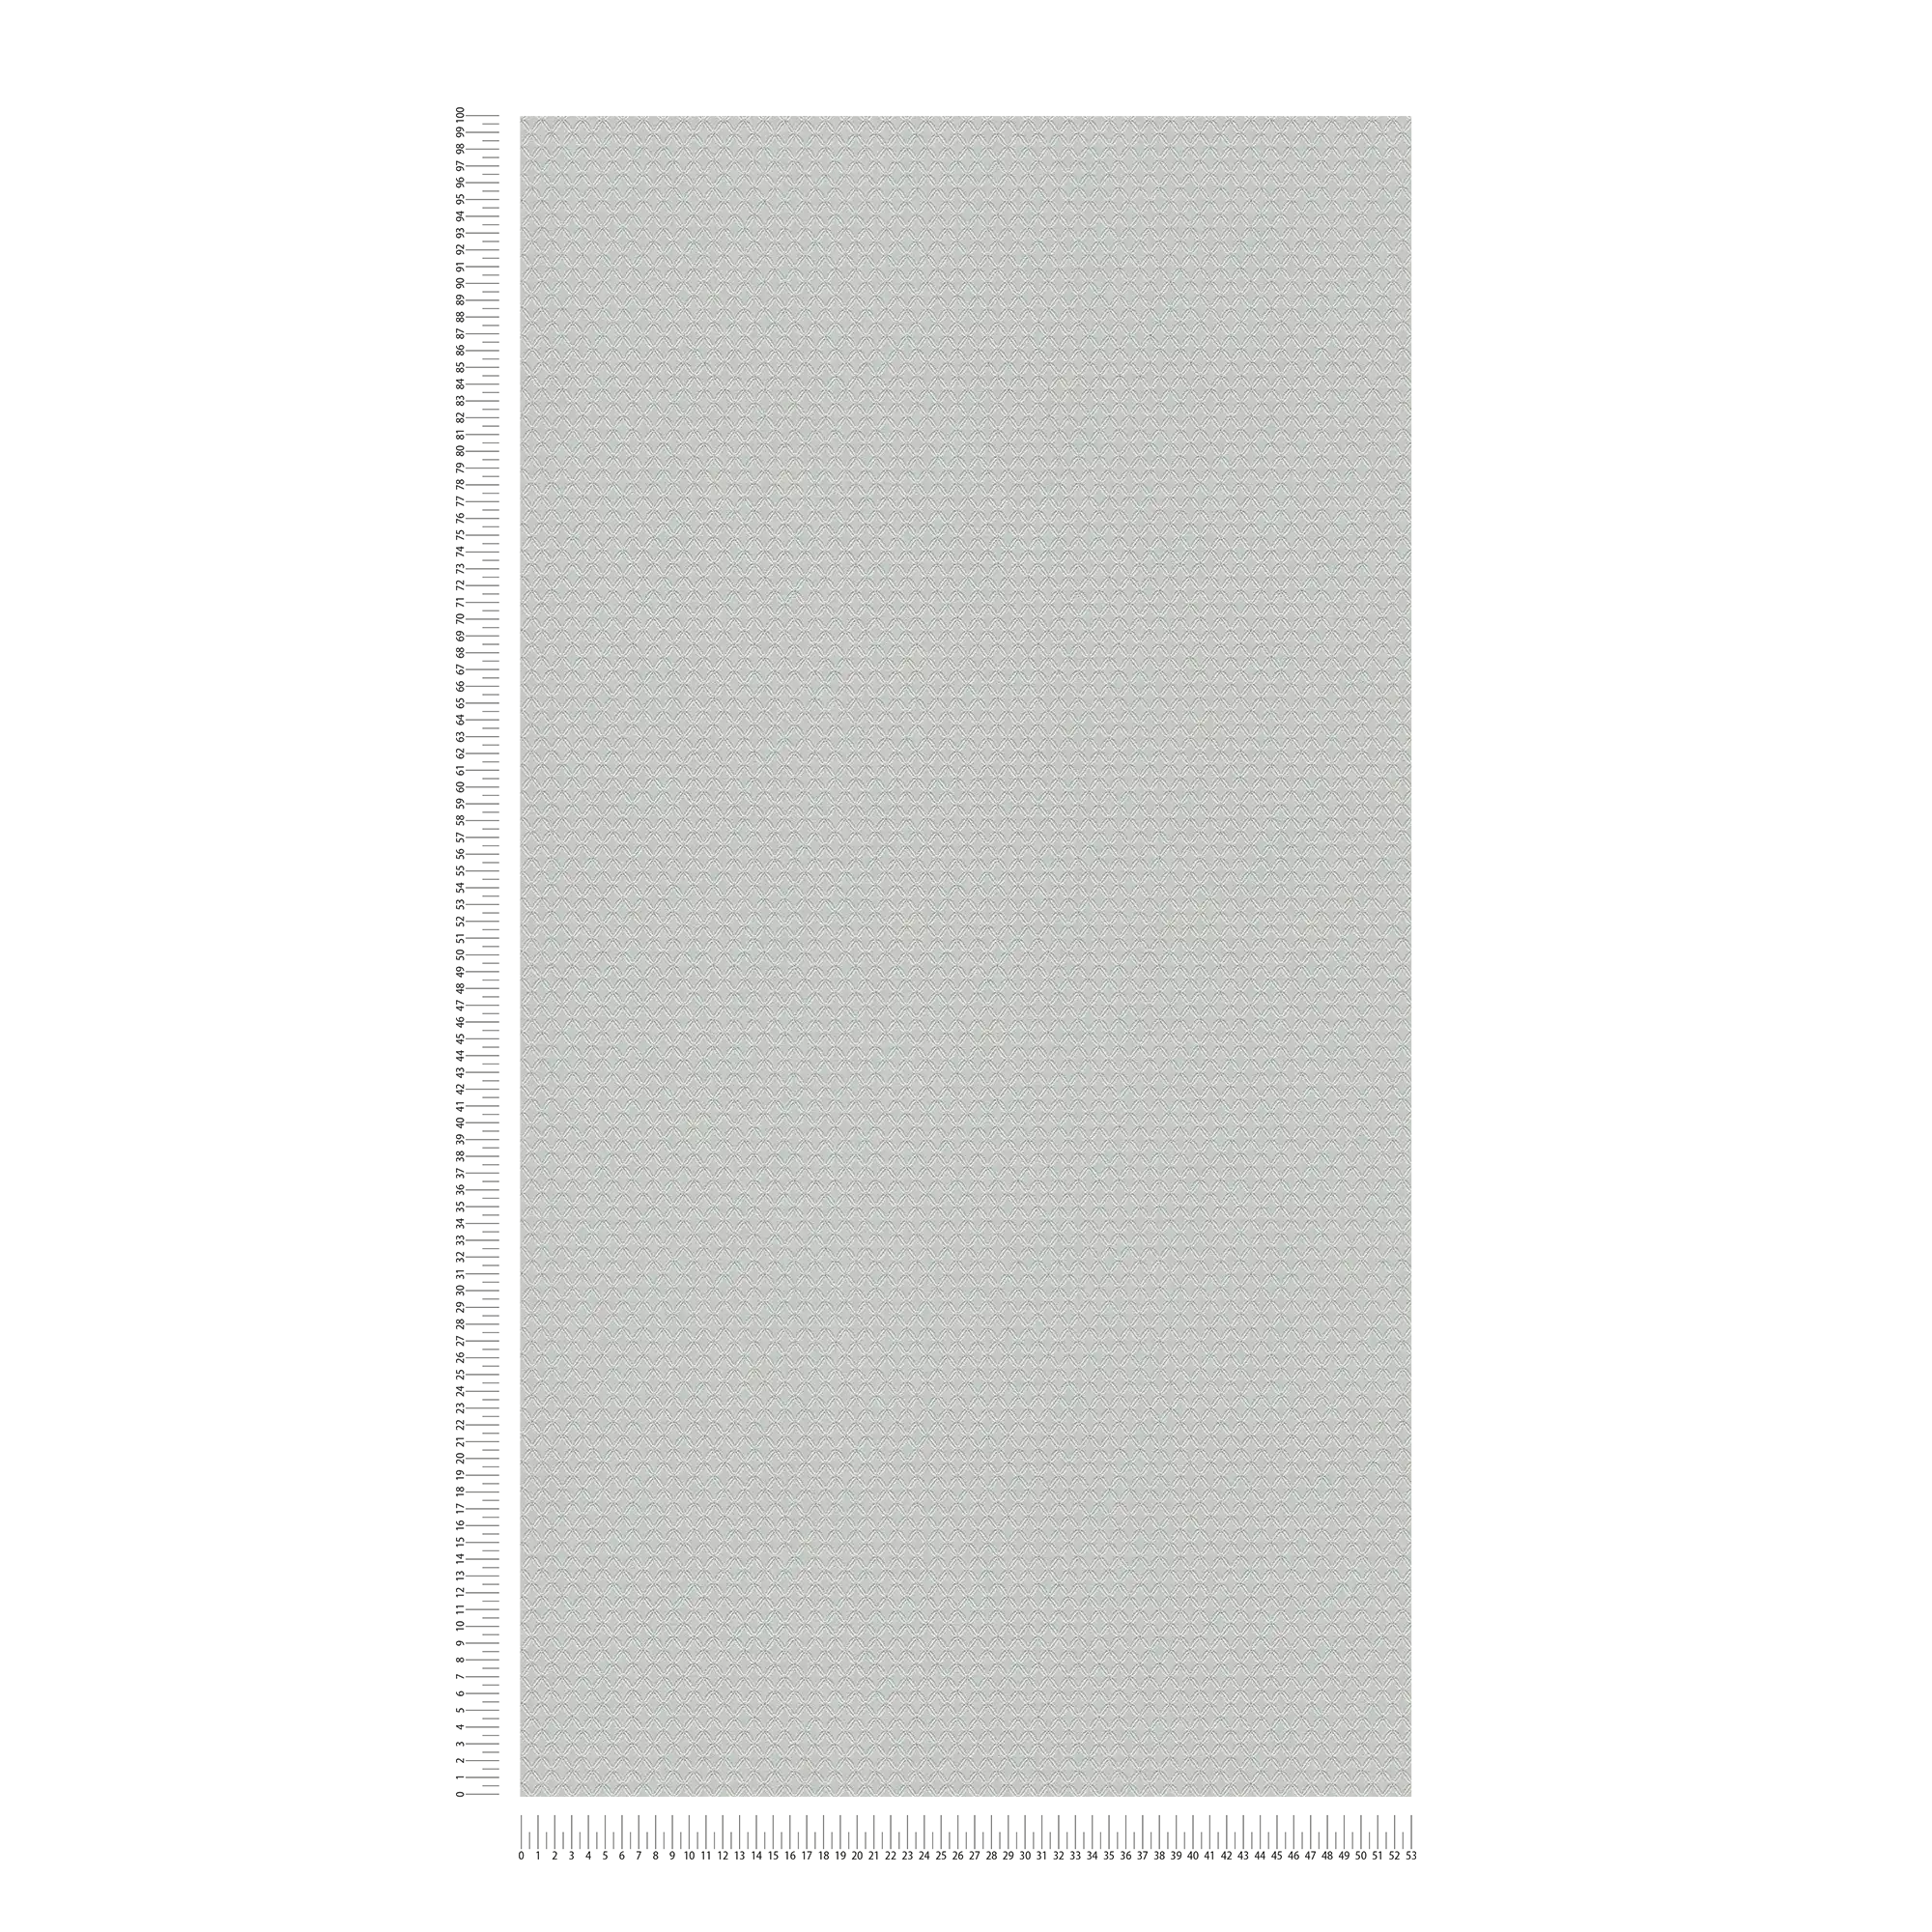             Papier peint scintillant avec légère structure en losange - gris
        